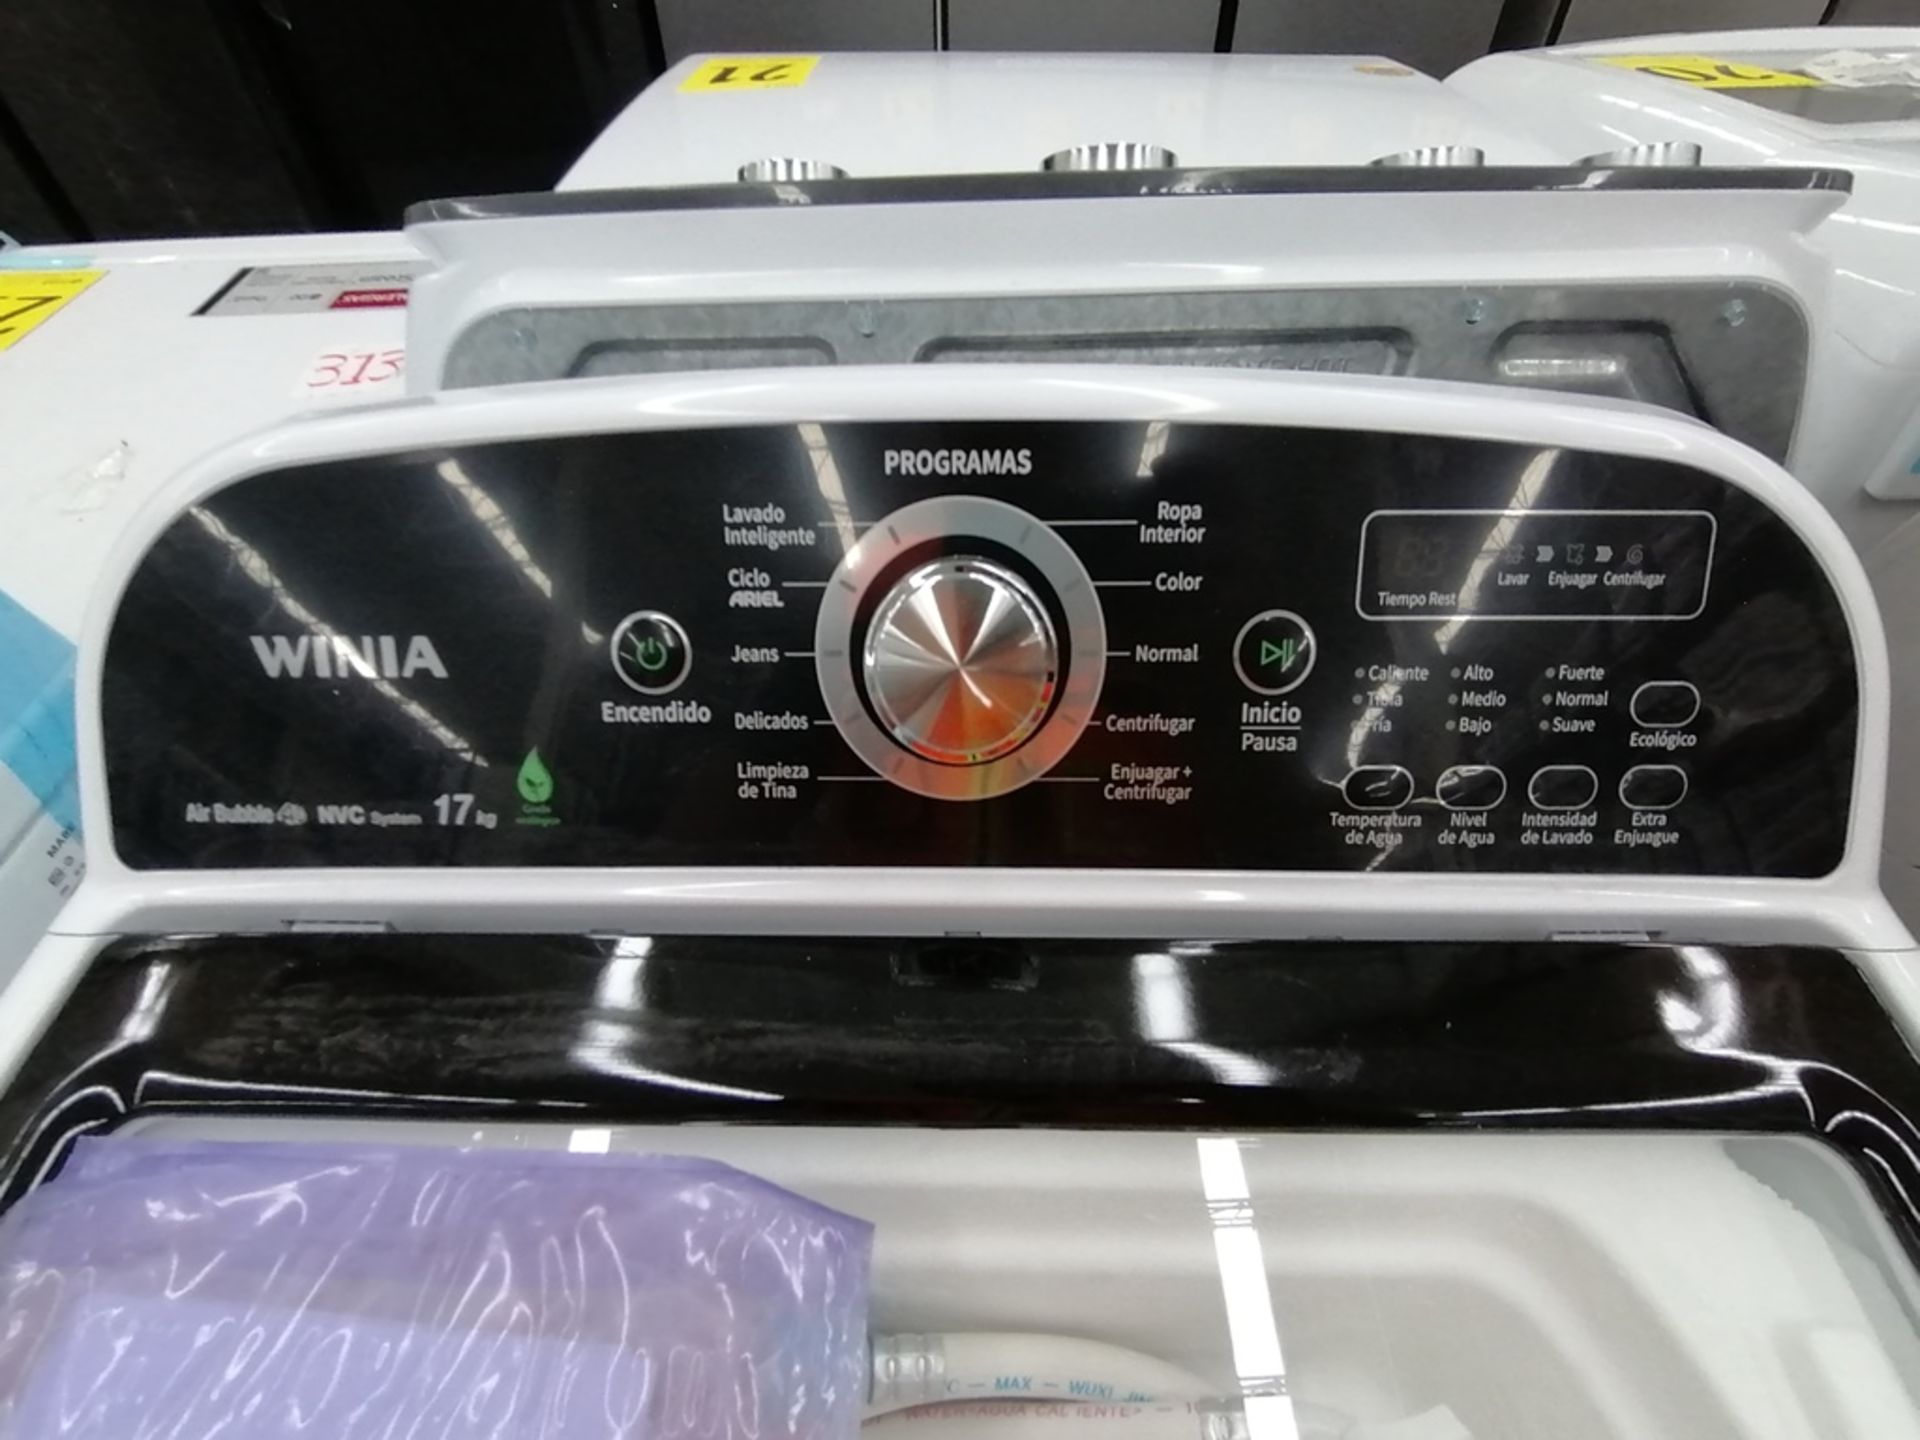 Lote de 3 lavadoras contiene: 1 Lavadora de 16KG, Marca Mabe, Modelo LMA46102VBAB02, Serie 2108S802 - Image 6 of 29